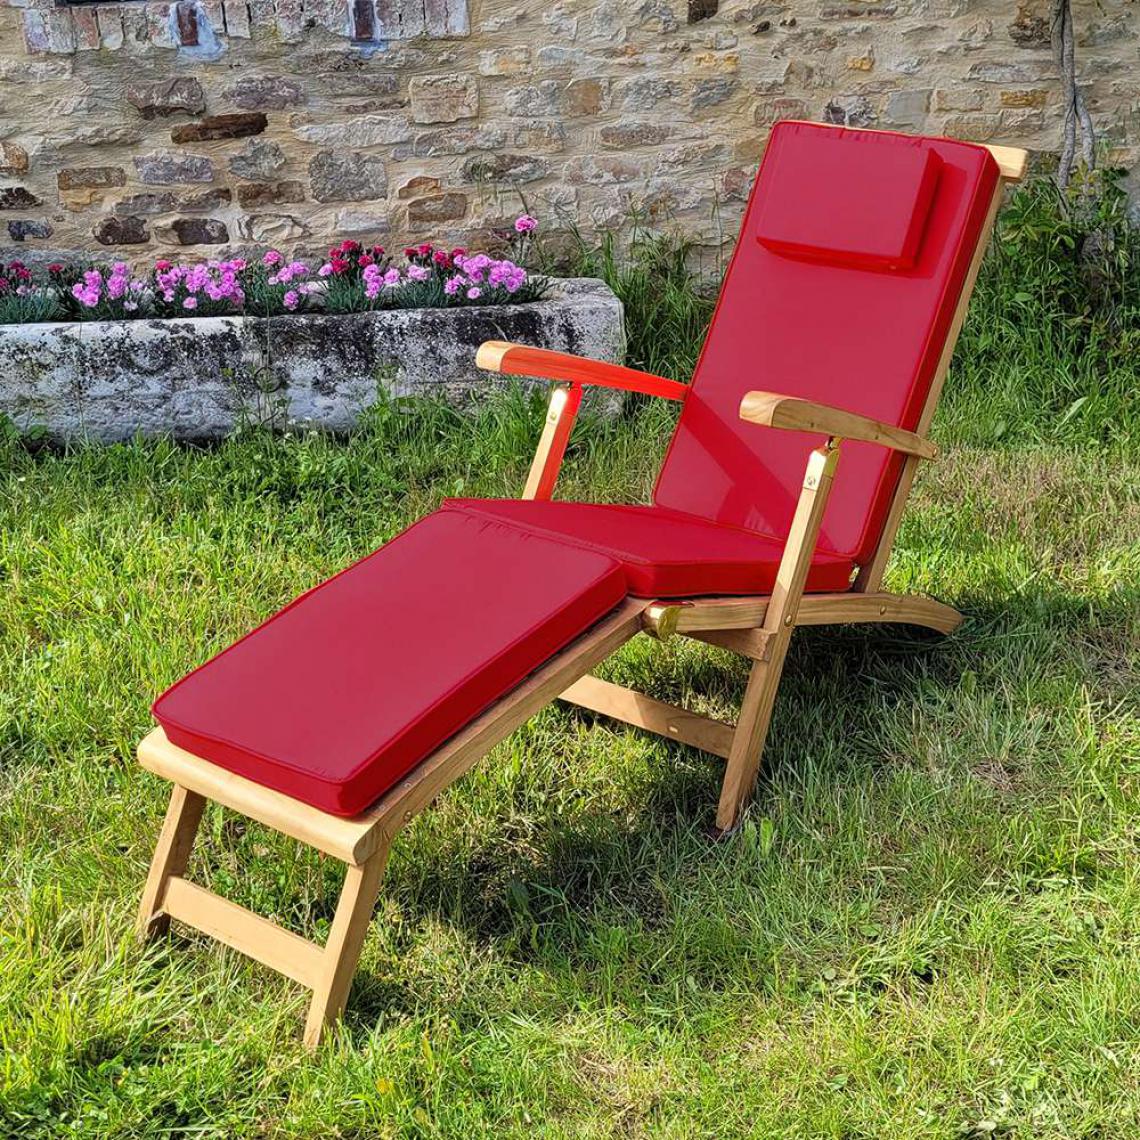 Teck'Attitude - Matelas framboise pour chaise longue - Coussins, galettes de jardin